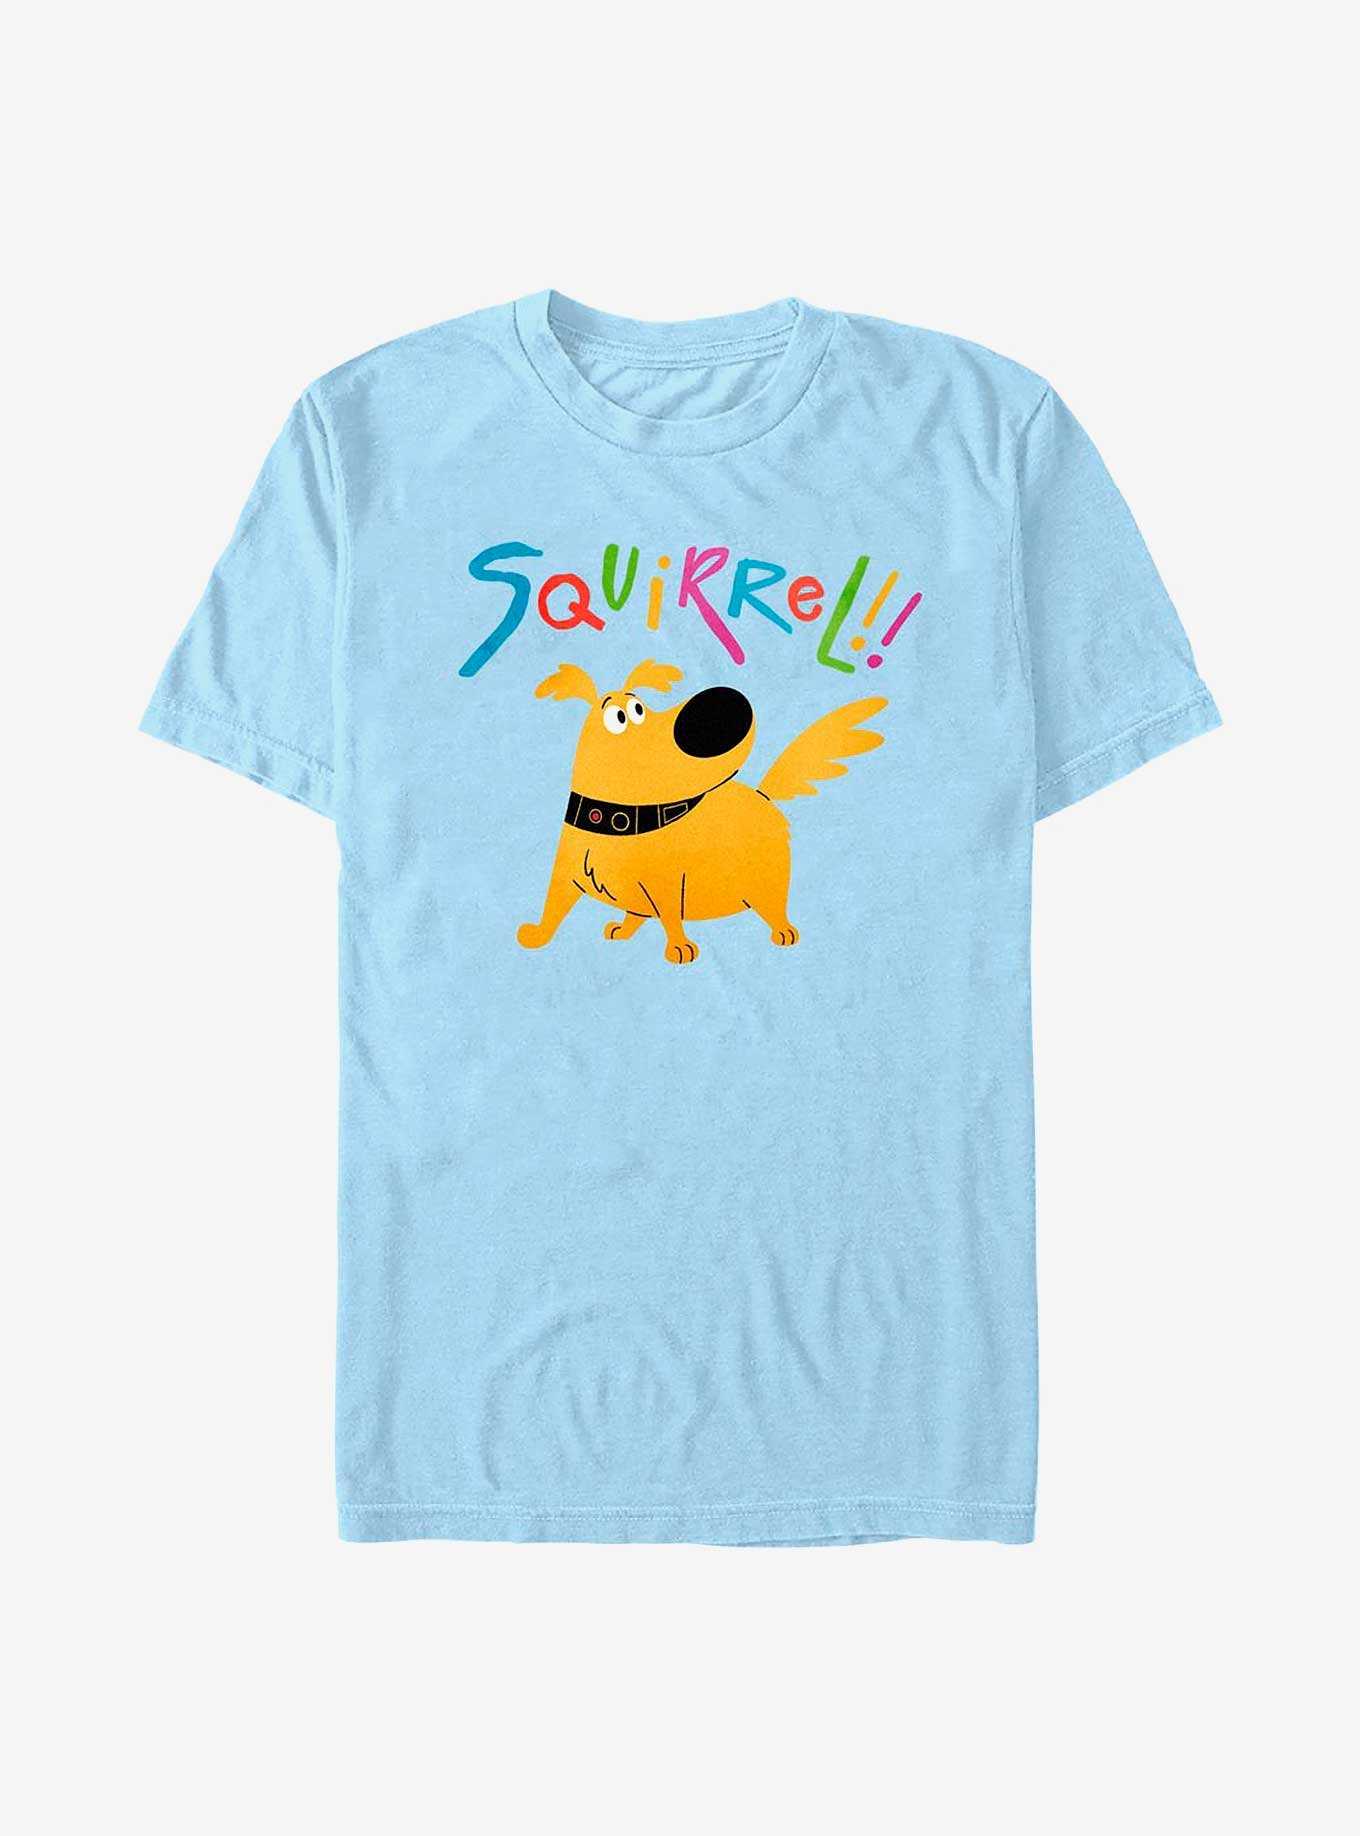 Disney Pixar Up Squirrel T-Shirt, , hi-res